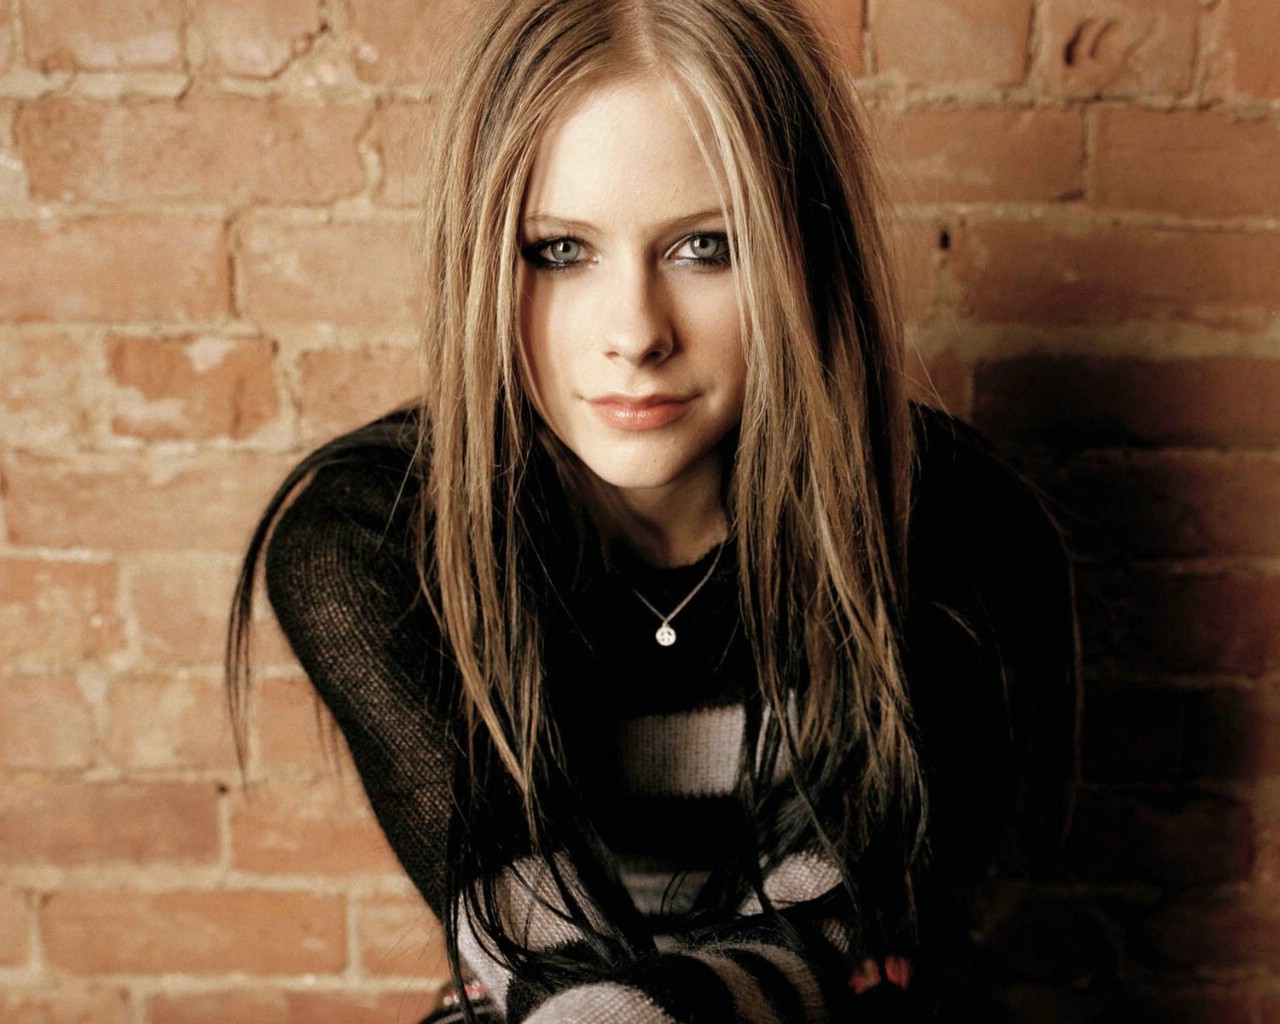 壁纸1024×768艾薇儿 Avril Lavigne 壁纸27壁纸,艾薇儿 Avril Lavigne壁纸图片-明星壁纸-明星图片素材-桌面壁纸